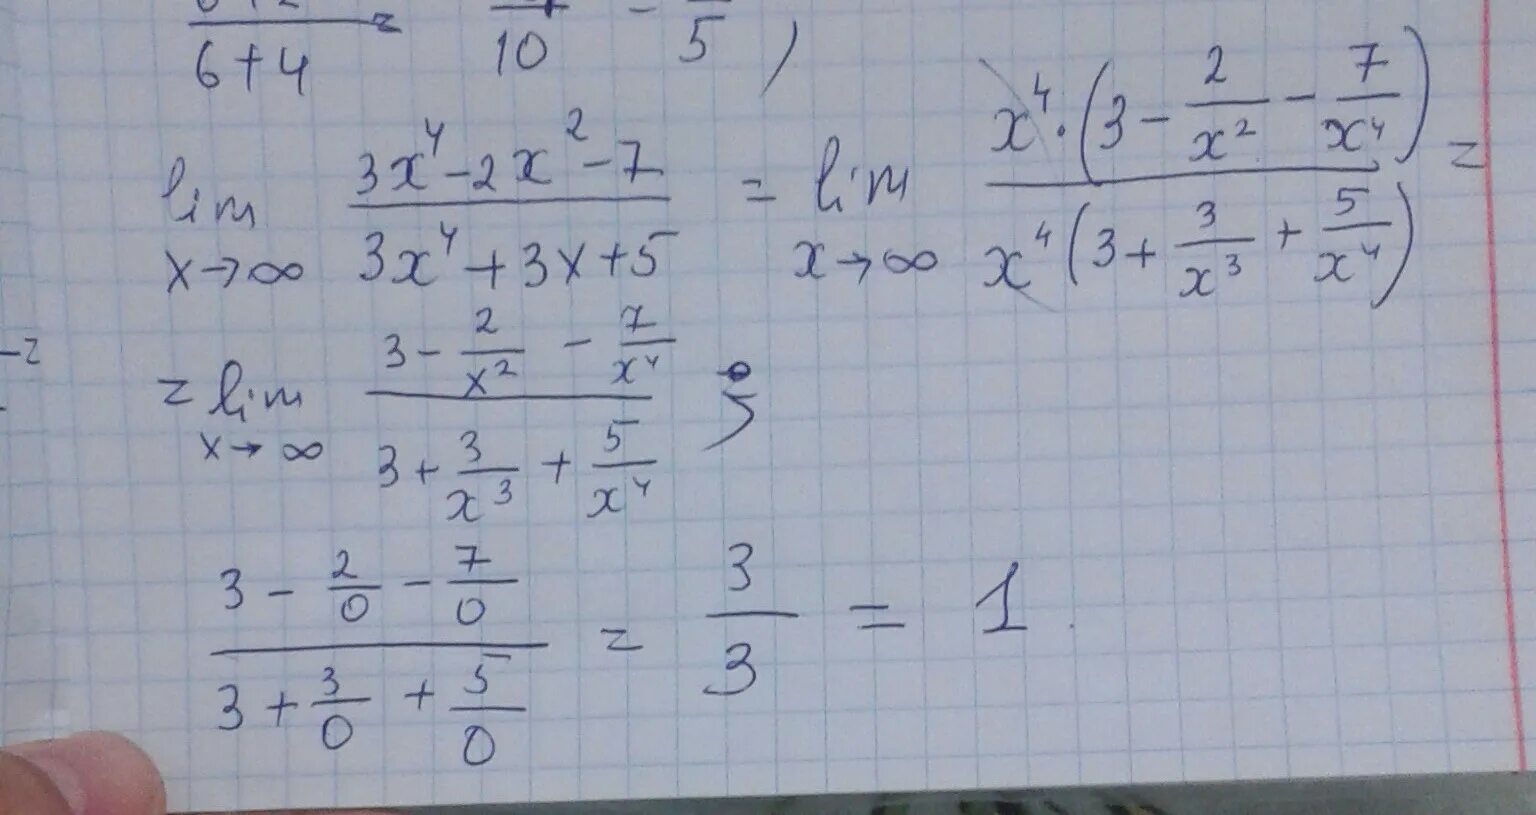 Lim x стремится к бесконечности 2/x 2+3x. Lim x стремится к бесконечности x^2-4x+3/x+5. Lim x стремиться к бесконечности ( 2x/2x-3)^3x. Lim x стремится к бесконечности 3+x-5x4.